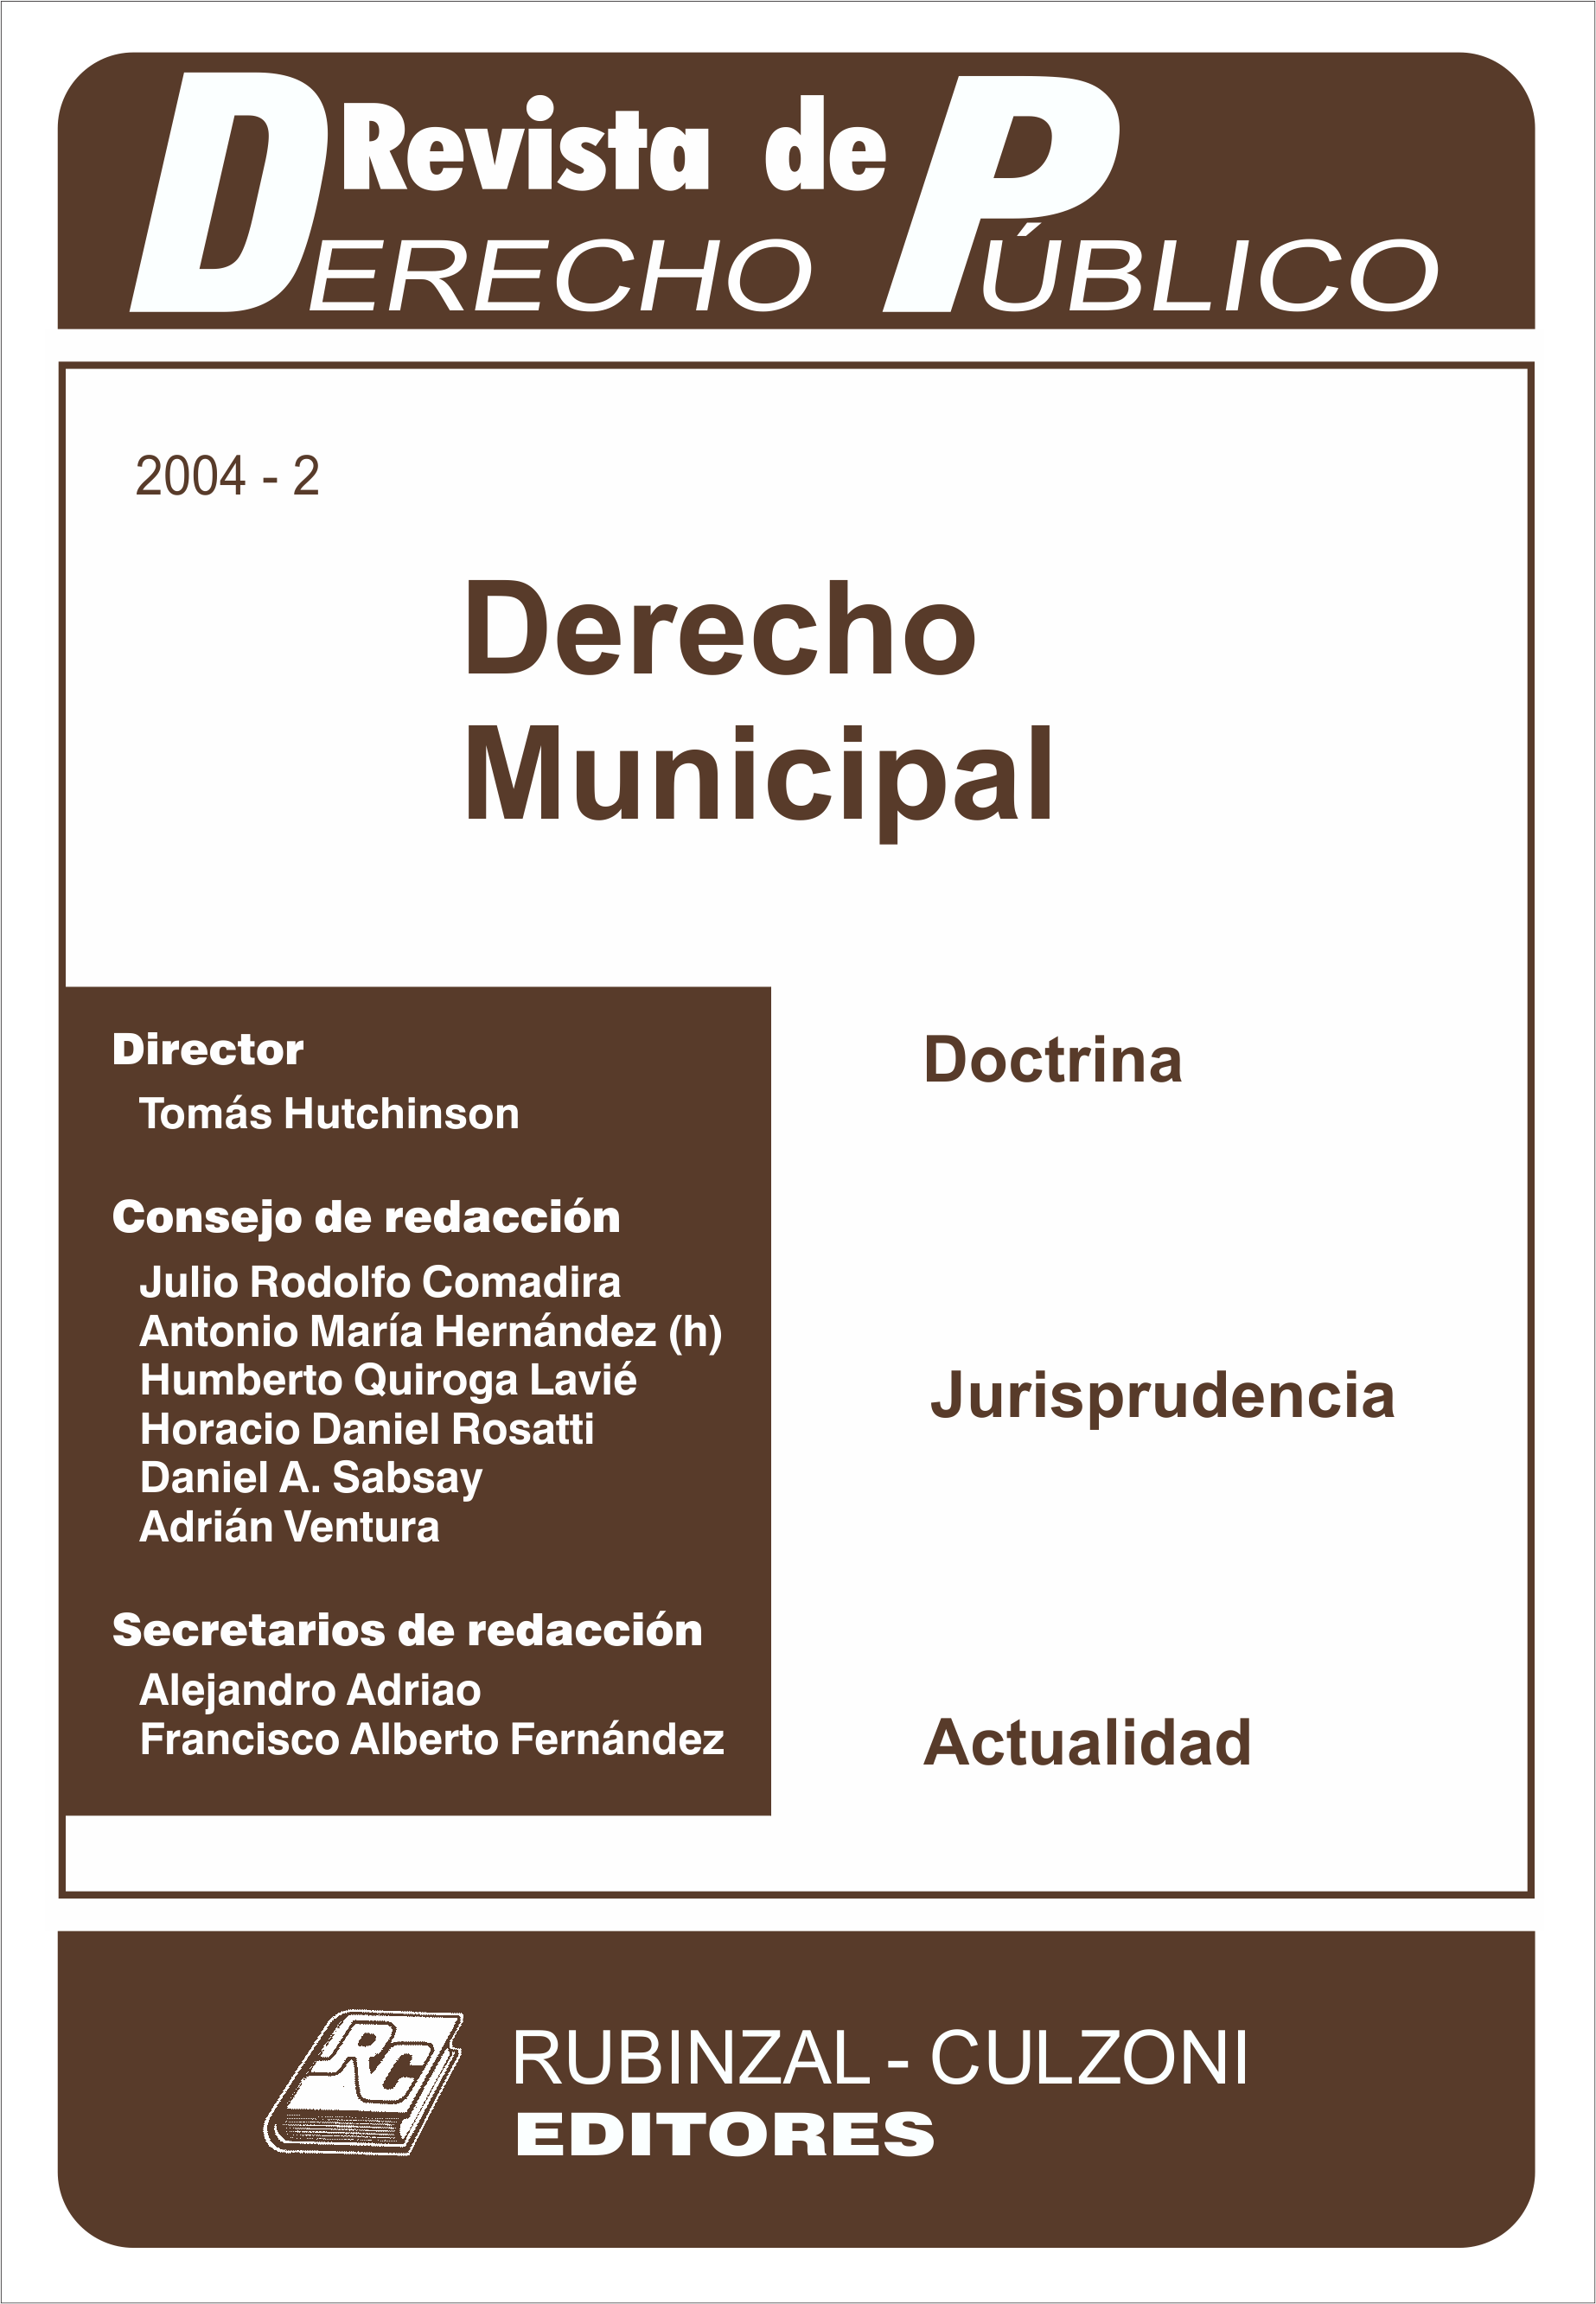 Revista de Derecho Público - Derecho Municipal.